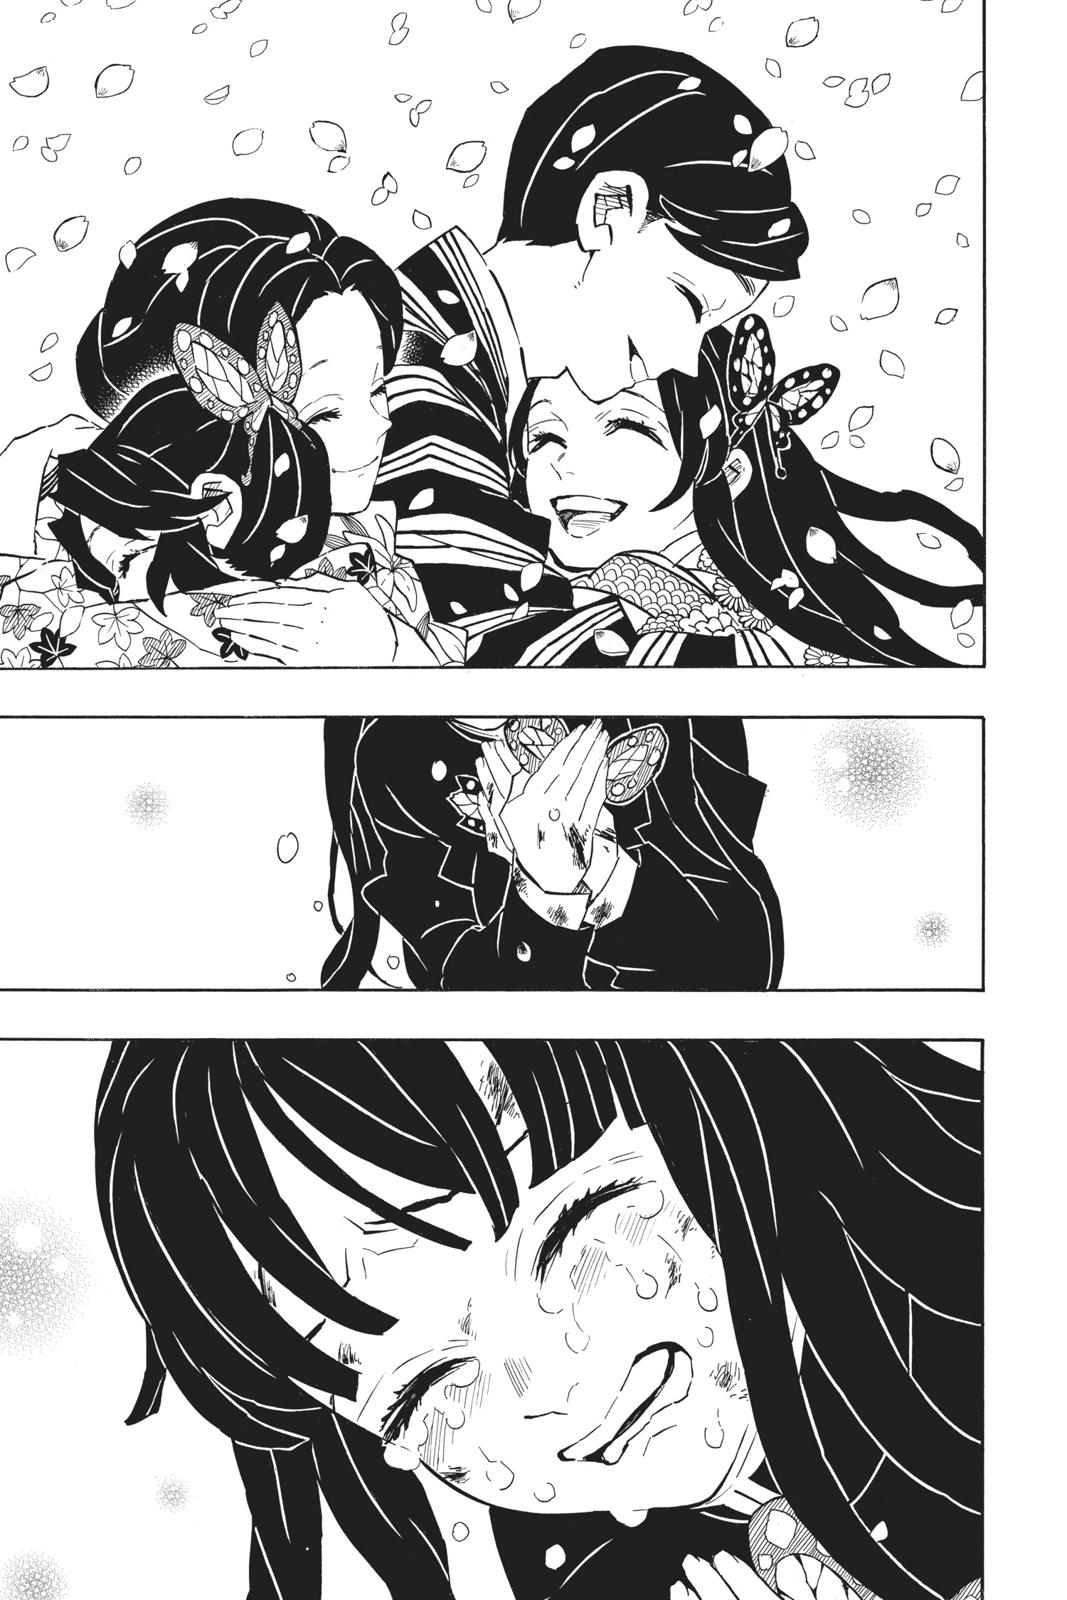 Demon Slayer Manga Manga Chapter - 163 - image 14